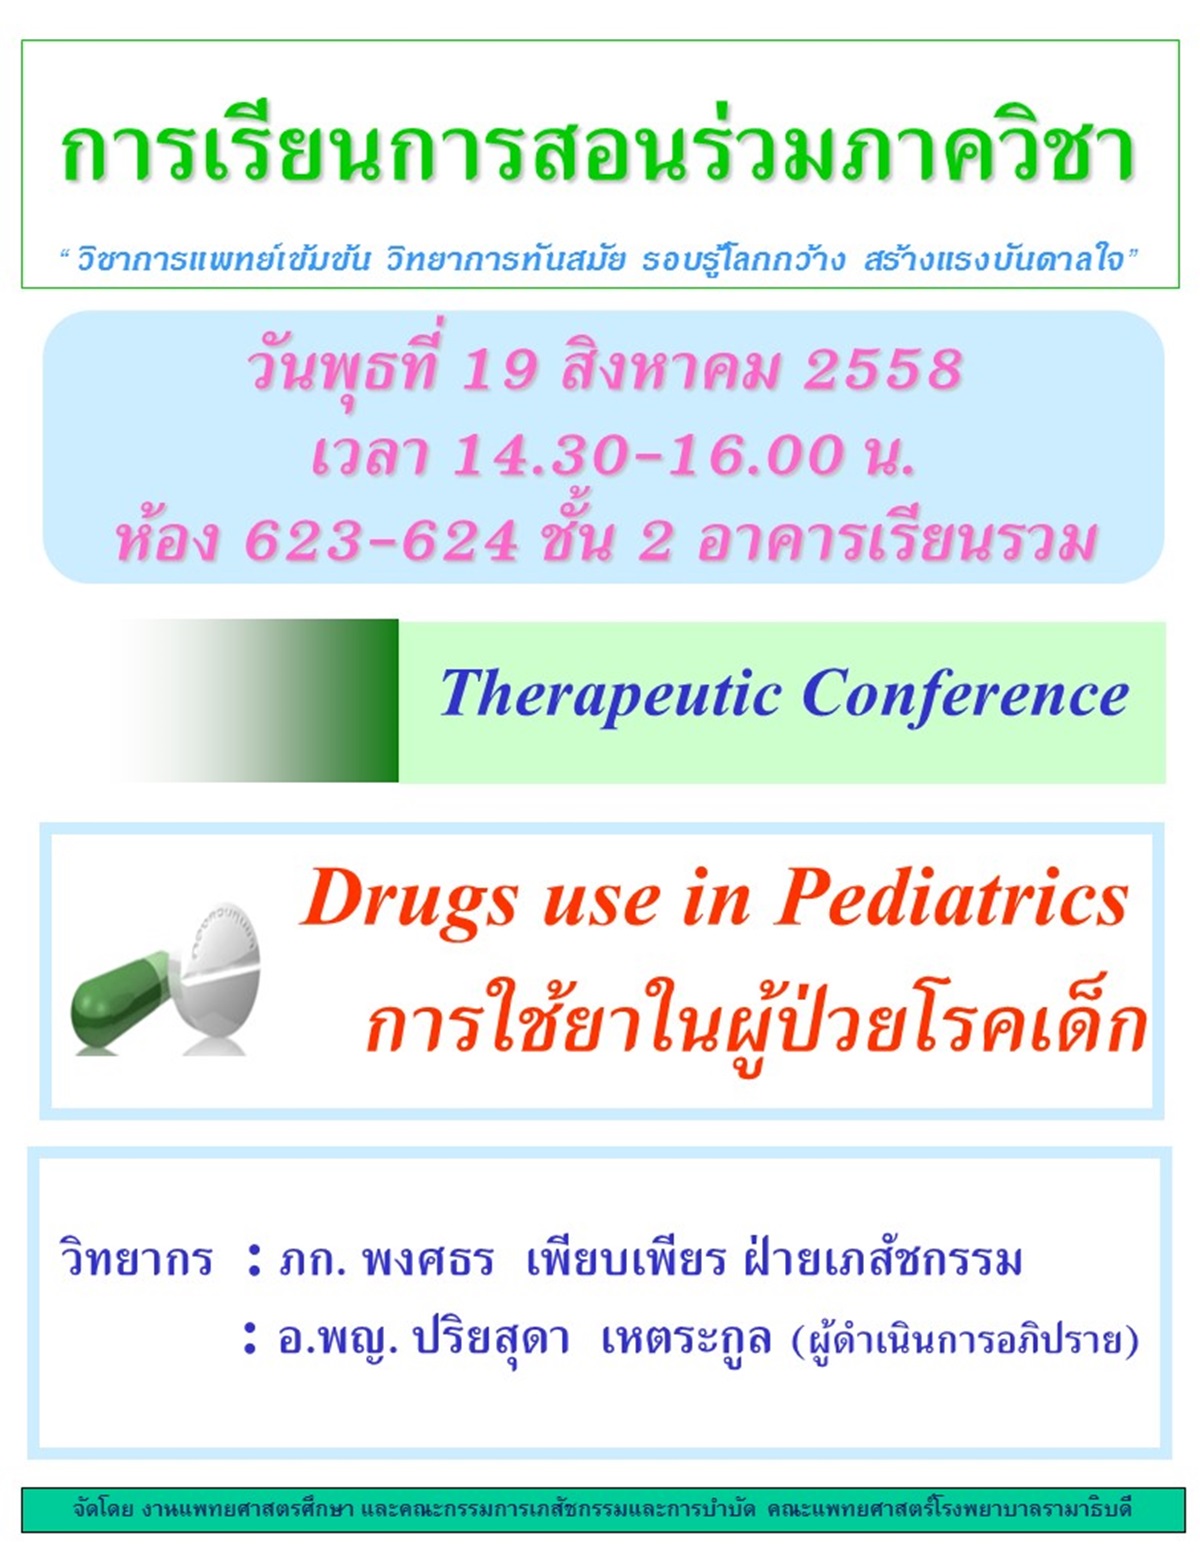 Therapeutic Conference การใช้ยาในผู้ป่วยโรคเด็ก